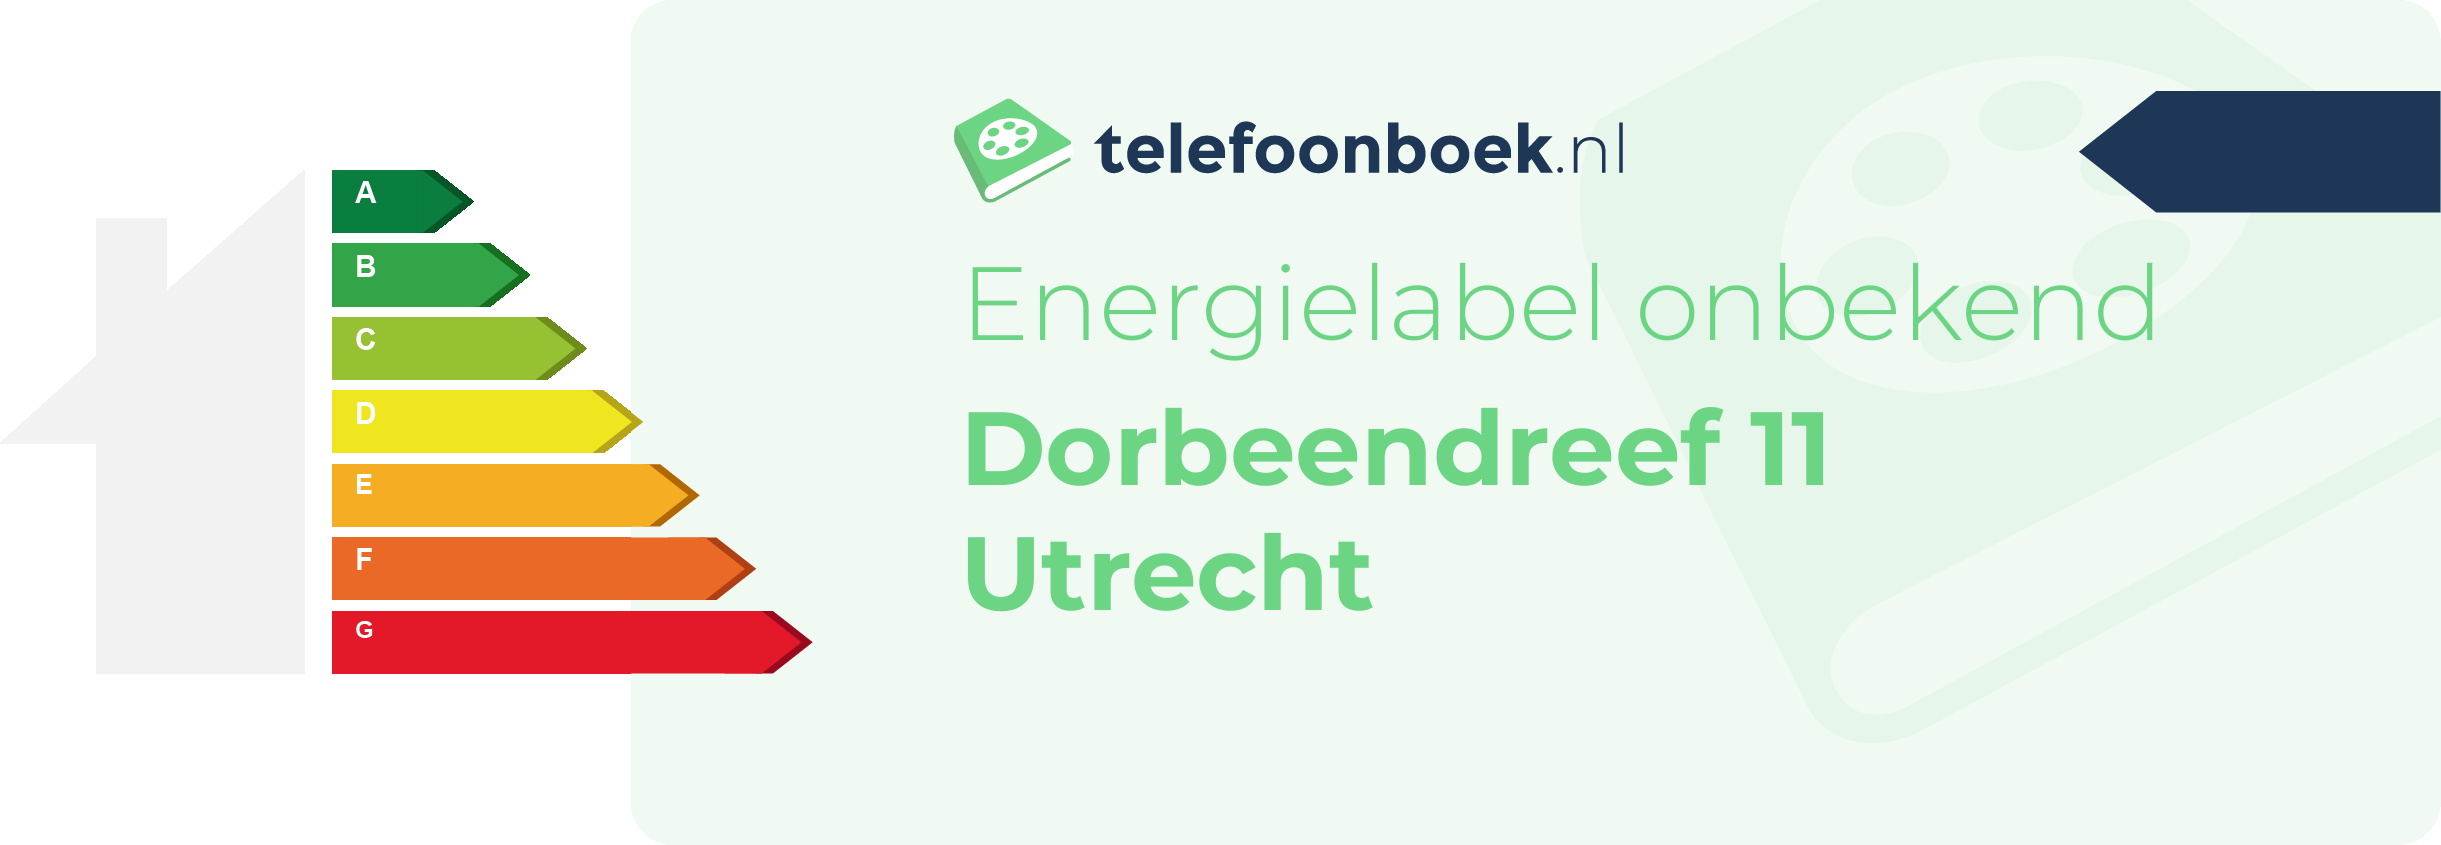 Energielabel Dorbeendreef 11 Utrecht